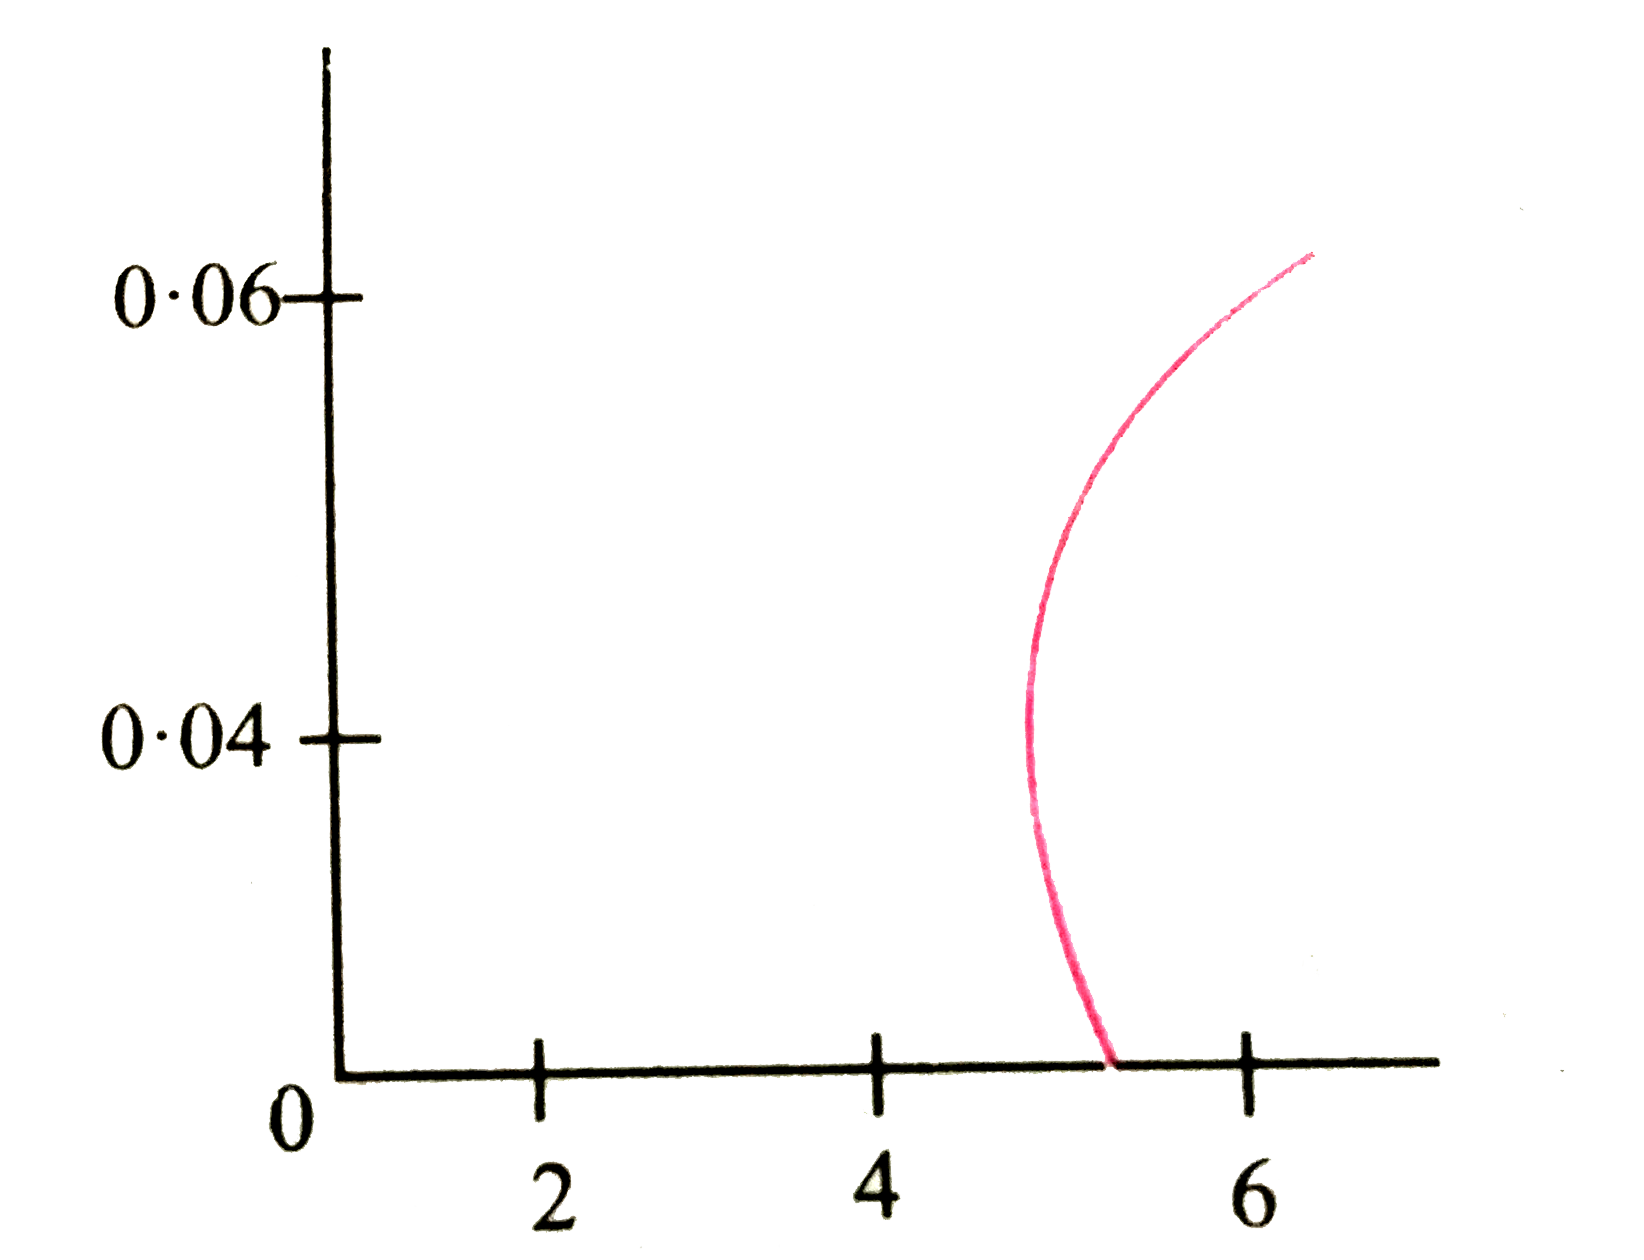 तार परिसर 0 lt T lt 4K  में पारे के प्रतिरोध  में होने वाले  परिवर्तन  को नीचे दिये गये ग्राफ दर्शाया  गया है । ग्राफ  द्वारा  दर्शायी  गयी परिघटना  का नाम लिखिए ।